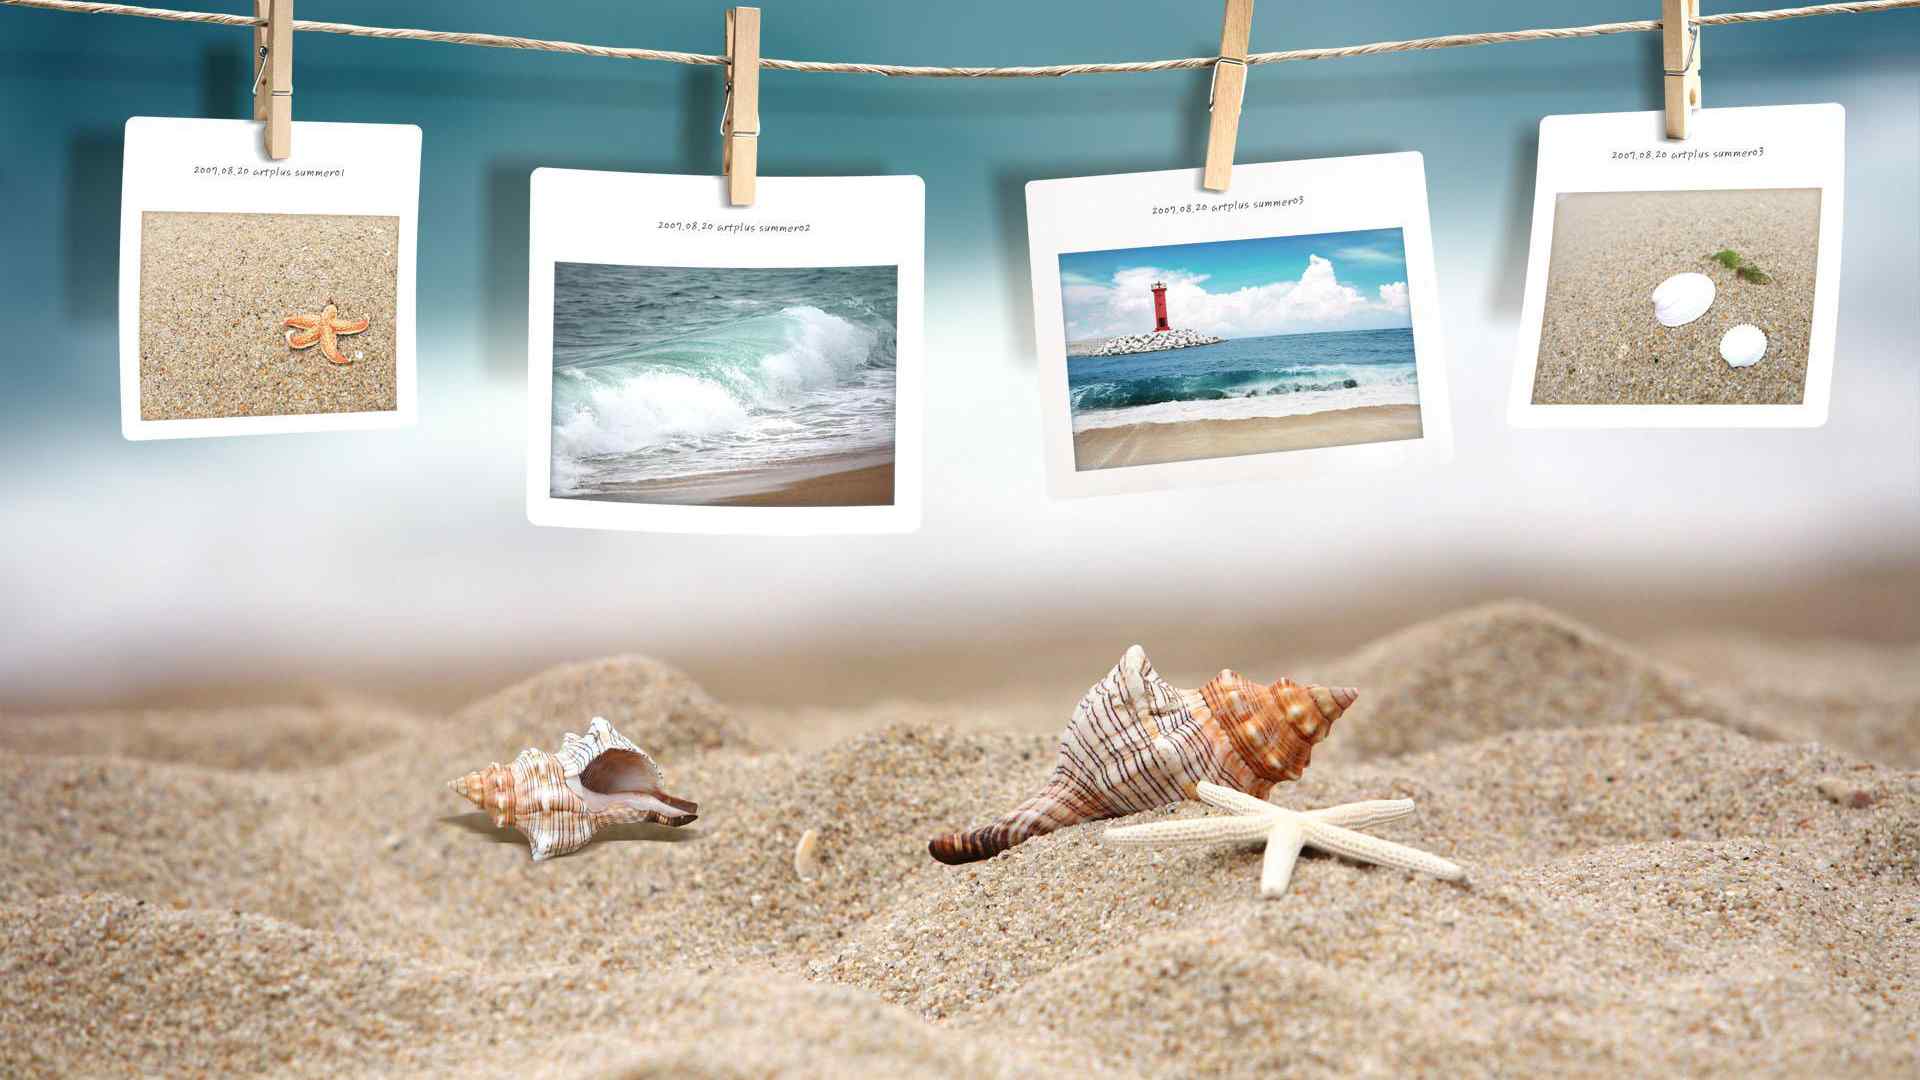 唯美意境的大海美丽风景沙滩图片电脑桌面壁纸第二辑